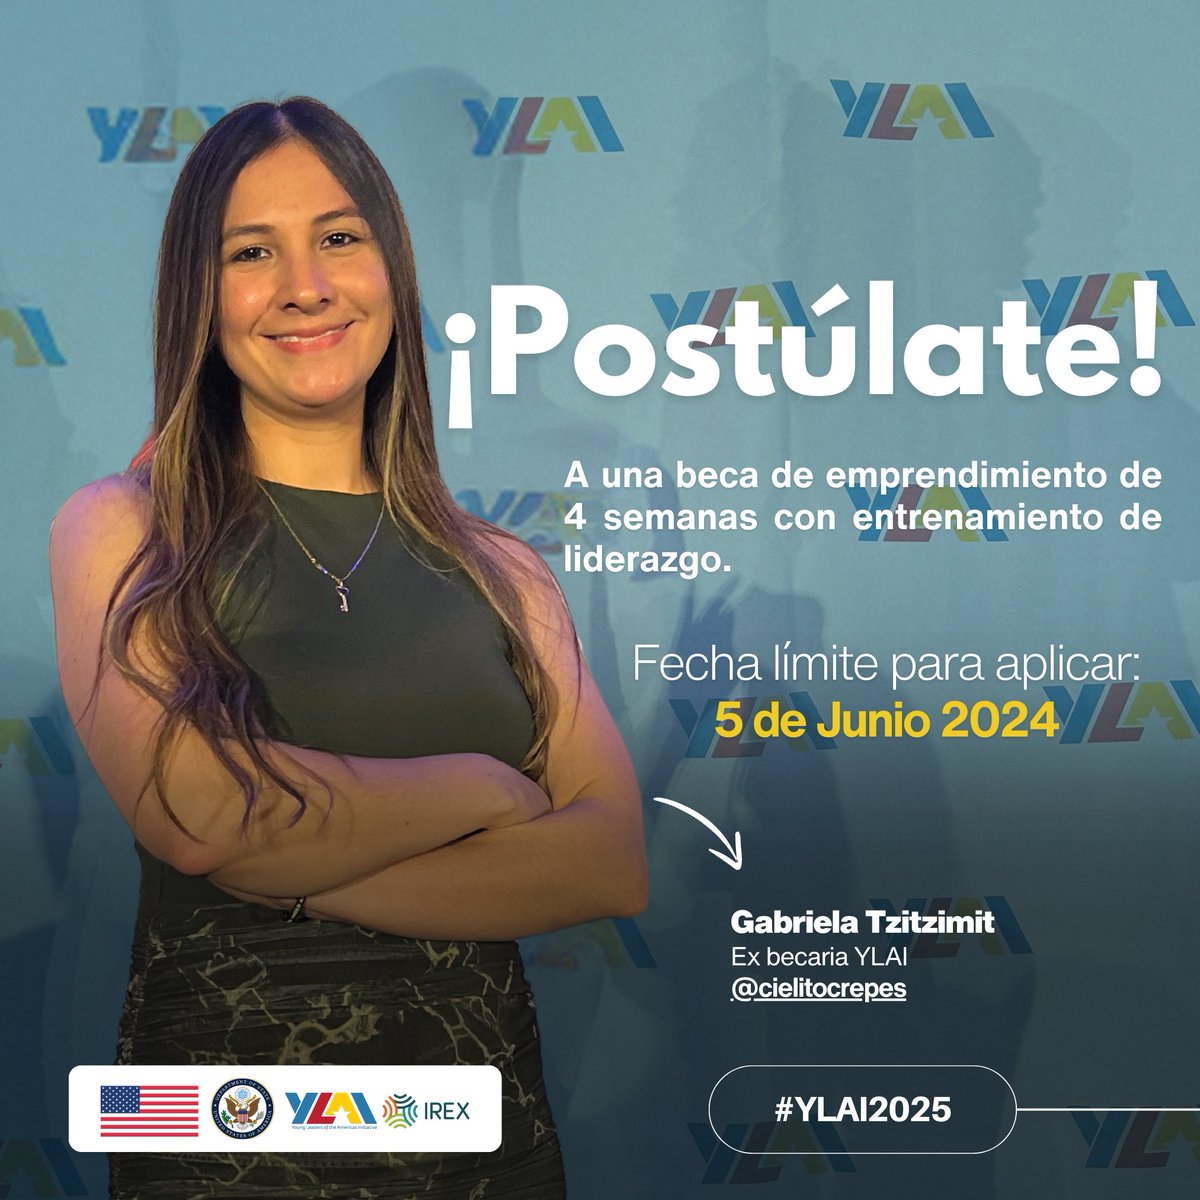 ¡La convocatoria para #YLAI2025 está abierta ya! Participa en una beca de emprendimiento de 4 semanas con un entrenamiento de liderazgo en #EEUU. +Información: ow.ly/5BUj50RAZuK ¡Envía tu solicitud antes del 5 de junio!